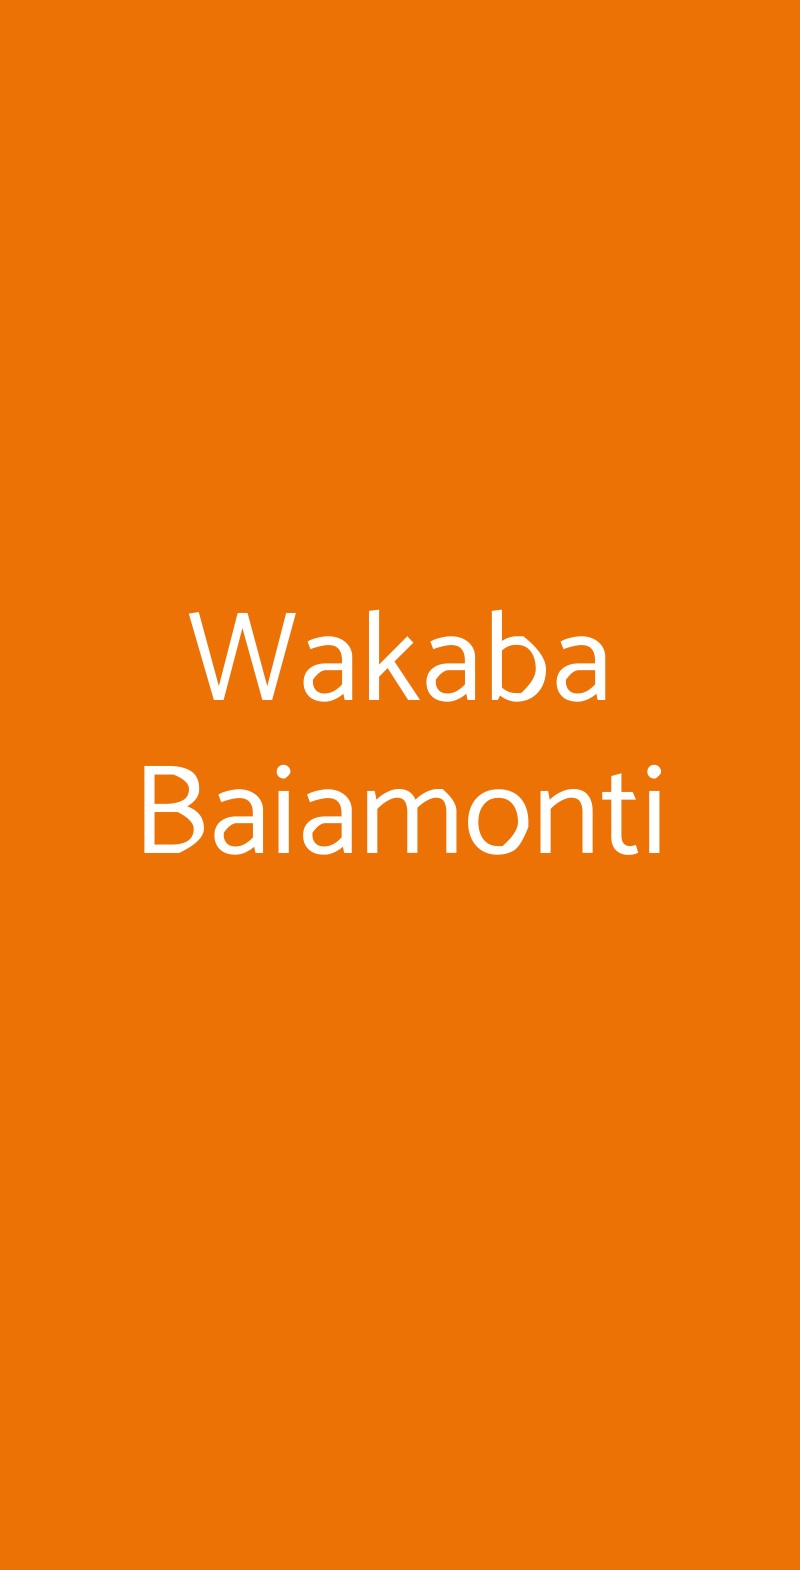 Wakaba Baiamonti Milano menù 1 pagina